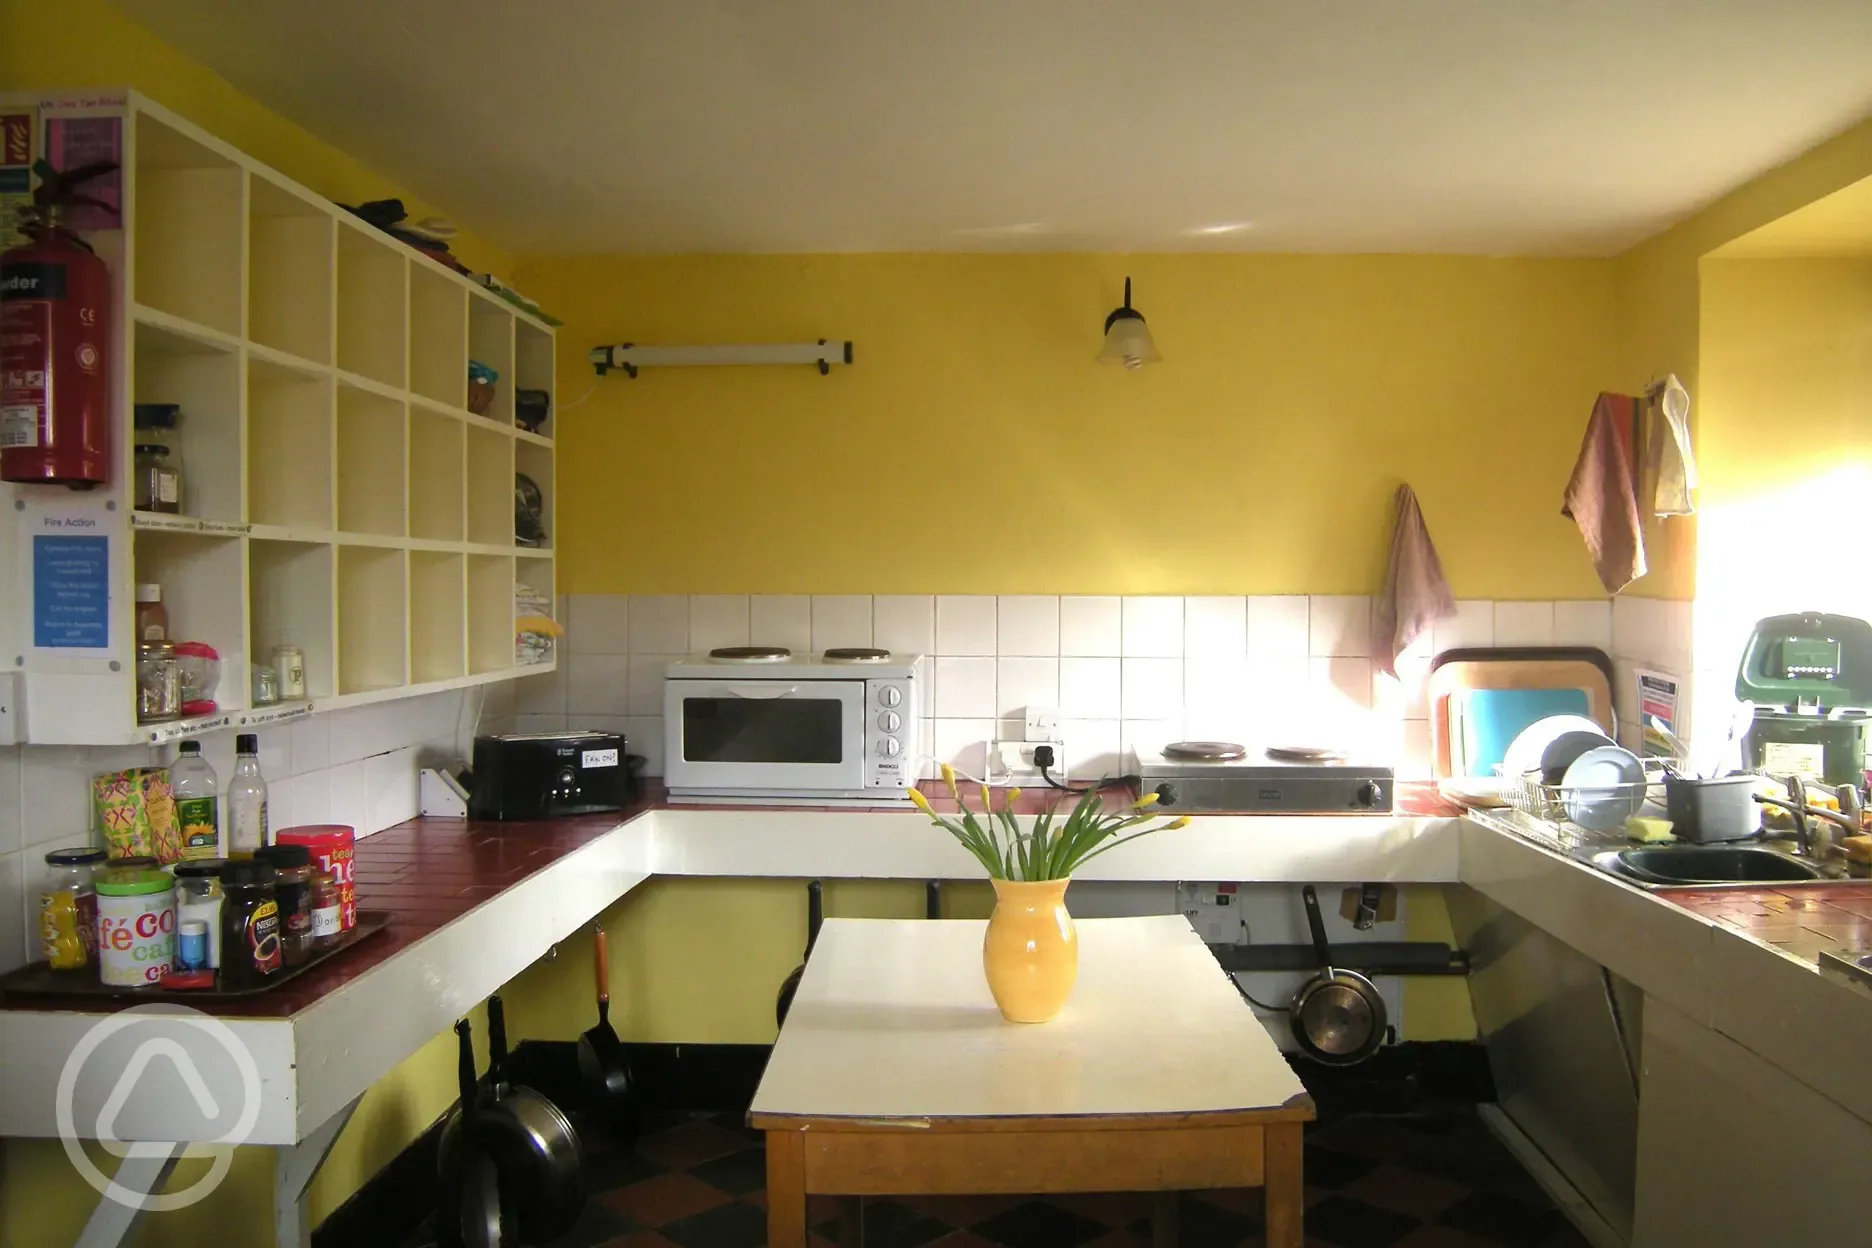 Hostel kitchen